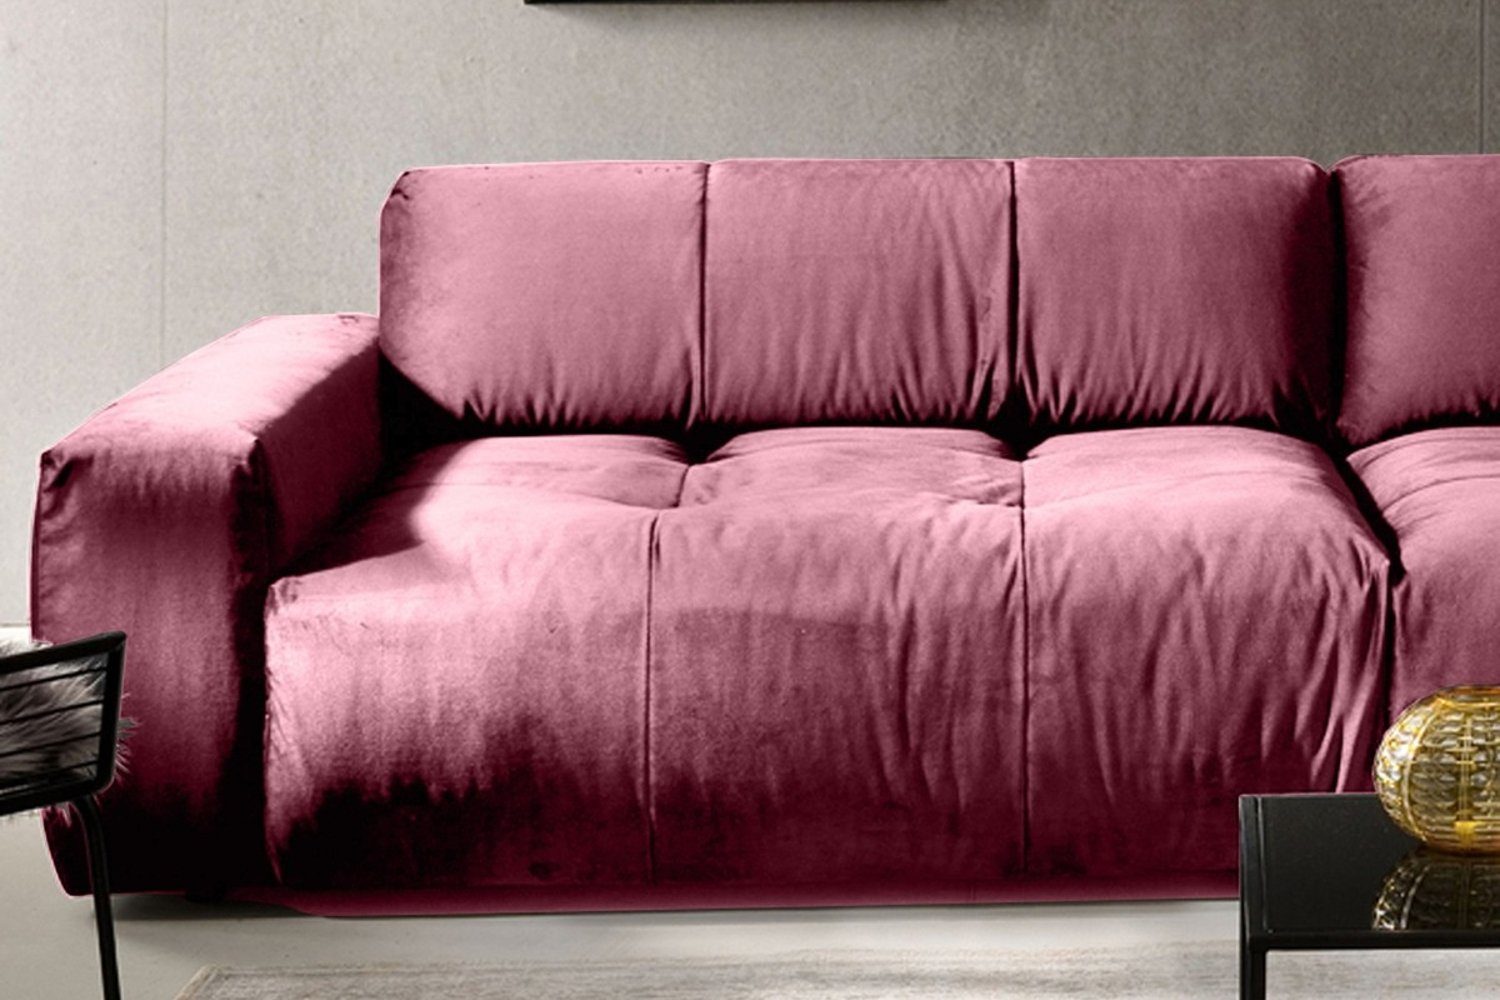 KAWOLA 3-Sitzer PALACE, Big Sofa mit Farben versch. Velvet rosa Sitztiefenverstellung